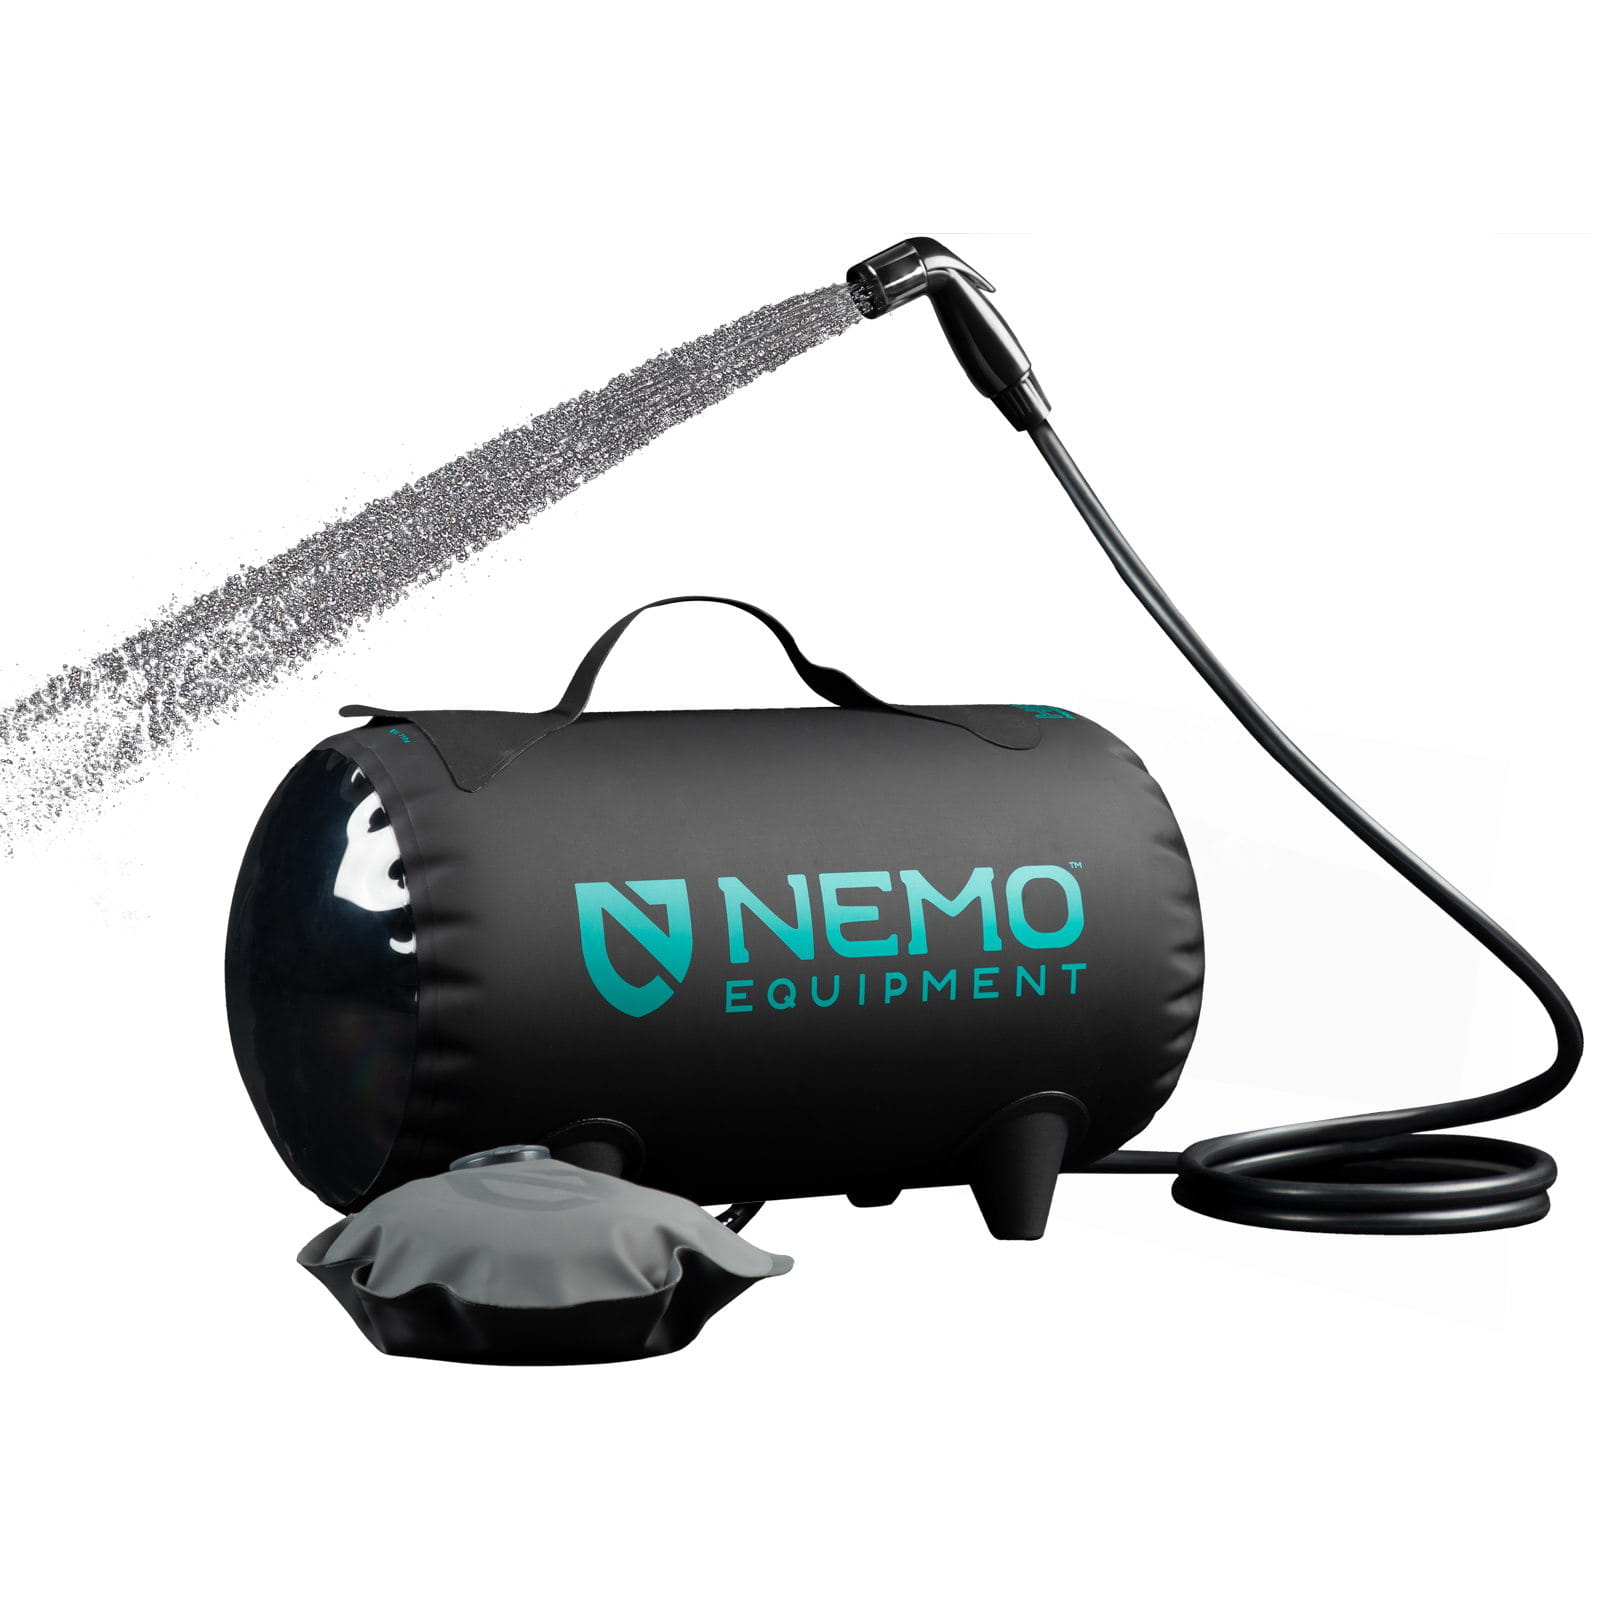 NEMO Helio - Camping-Dusche online kaufen